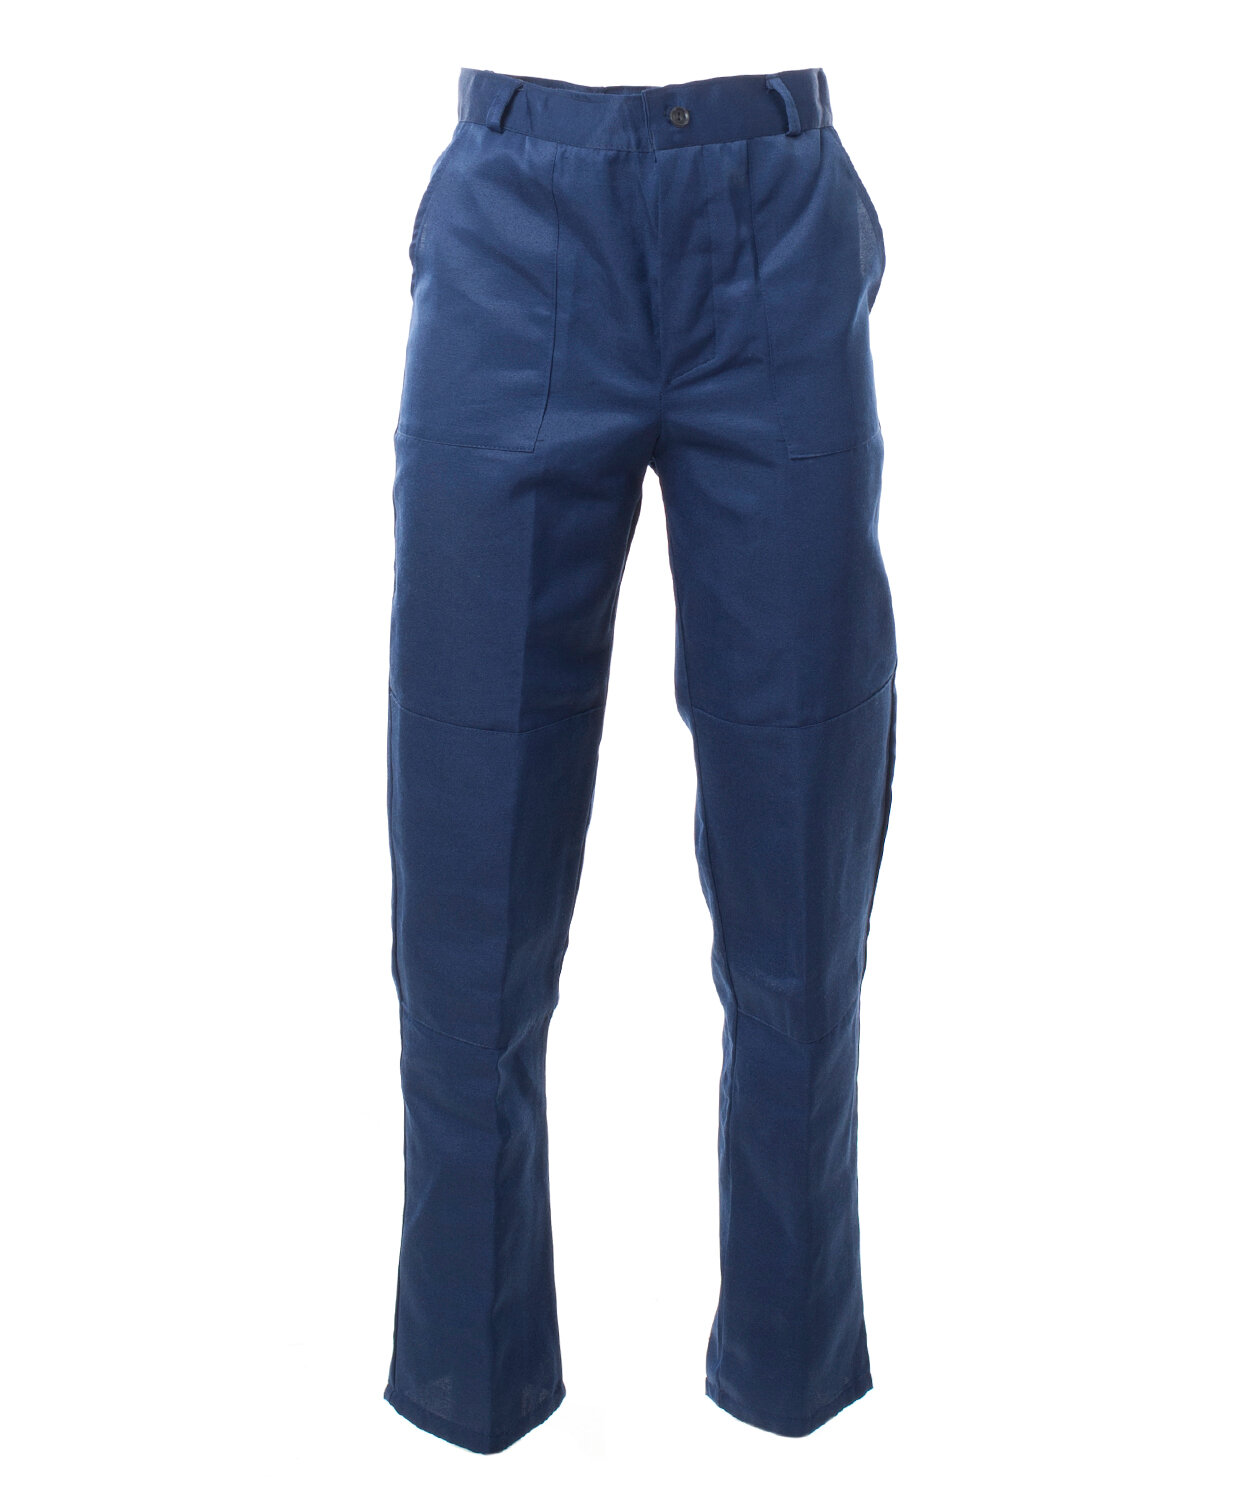 Костюм мужской «Стандарт» с СОП куртка, брюки цвет: т. синий, васильковый (52-54)104-108, 182-188